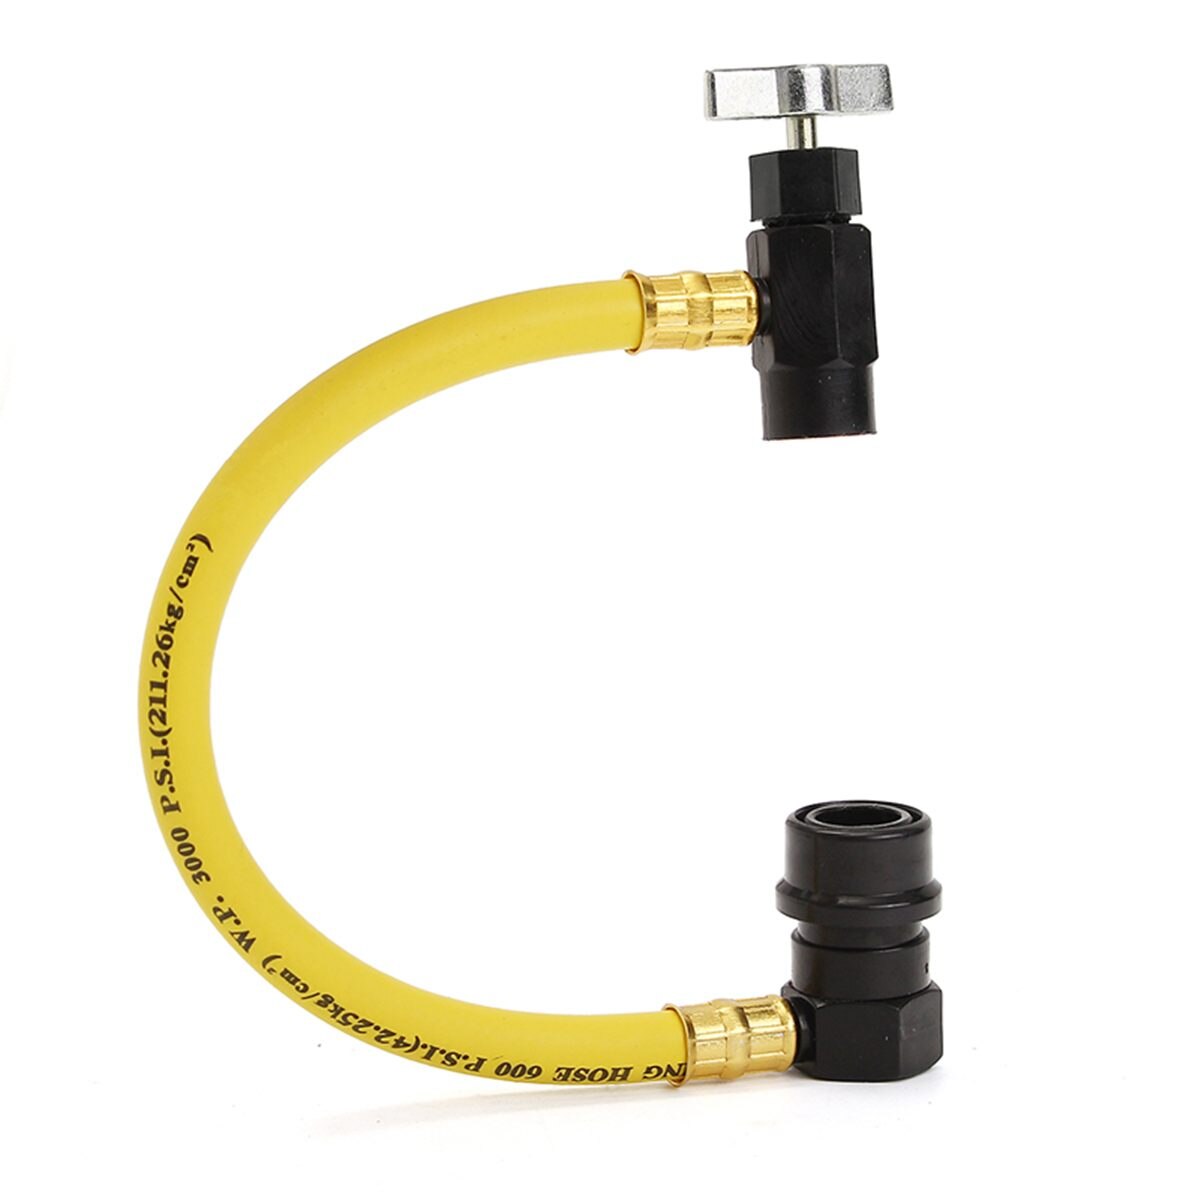 R134A tuyau de Recharge de climatisation | AC 10-1/2 "R134A tuyau de Recharge de climatisation automatique, réfrigérant peut taper 600 PSI tuyau en plastique métal jaune